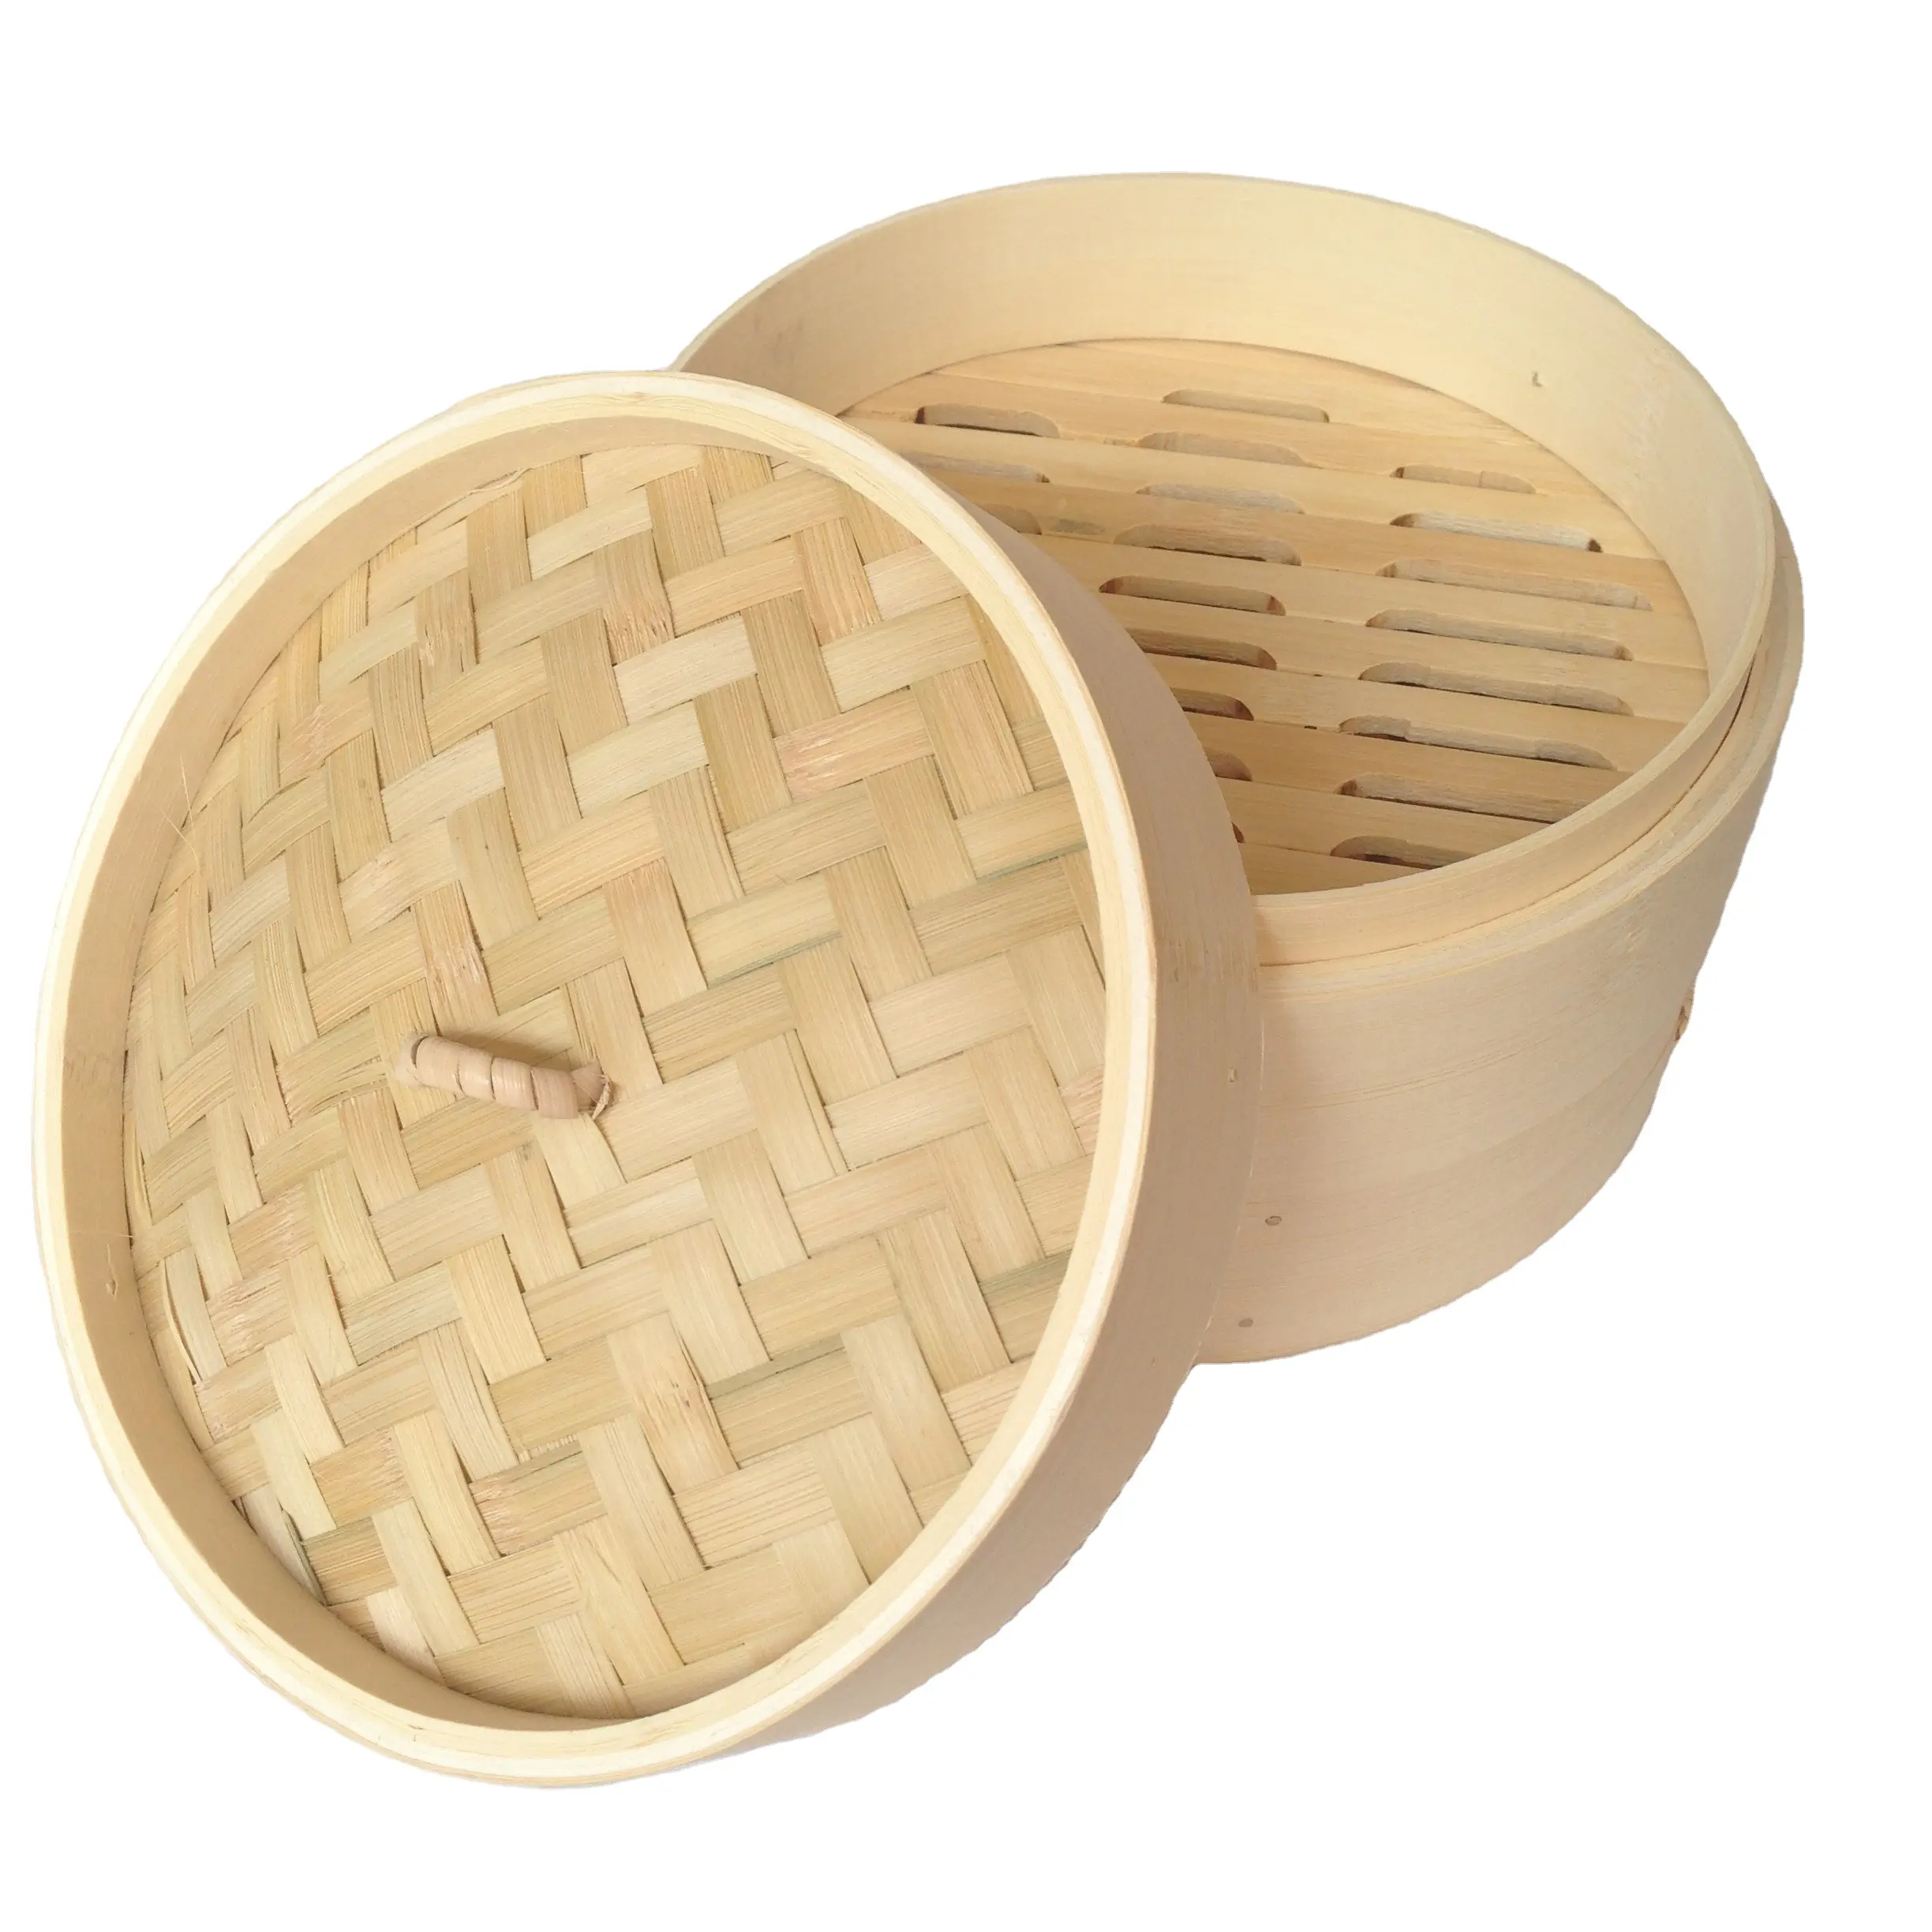 Plancha de bambú natural, alta calidad, idli